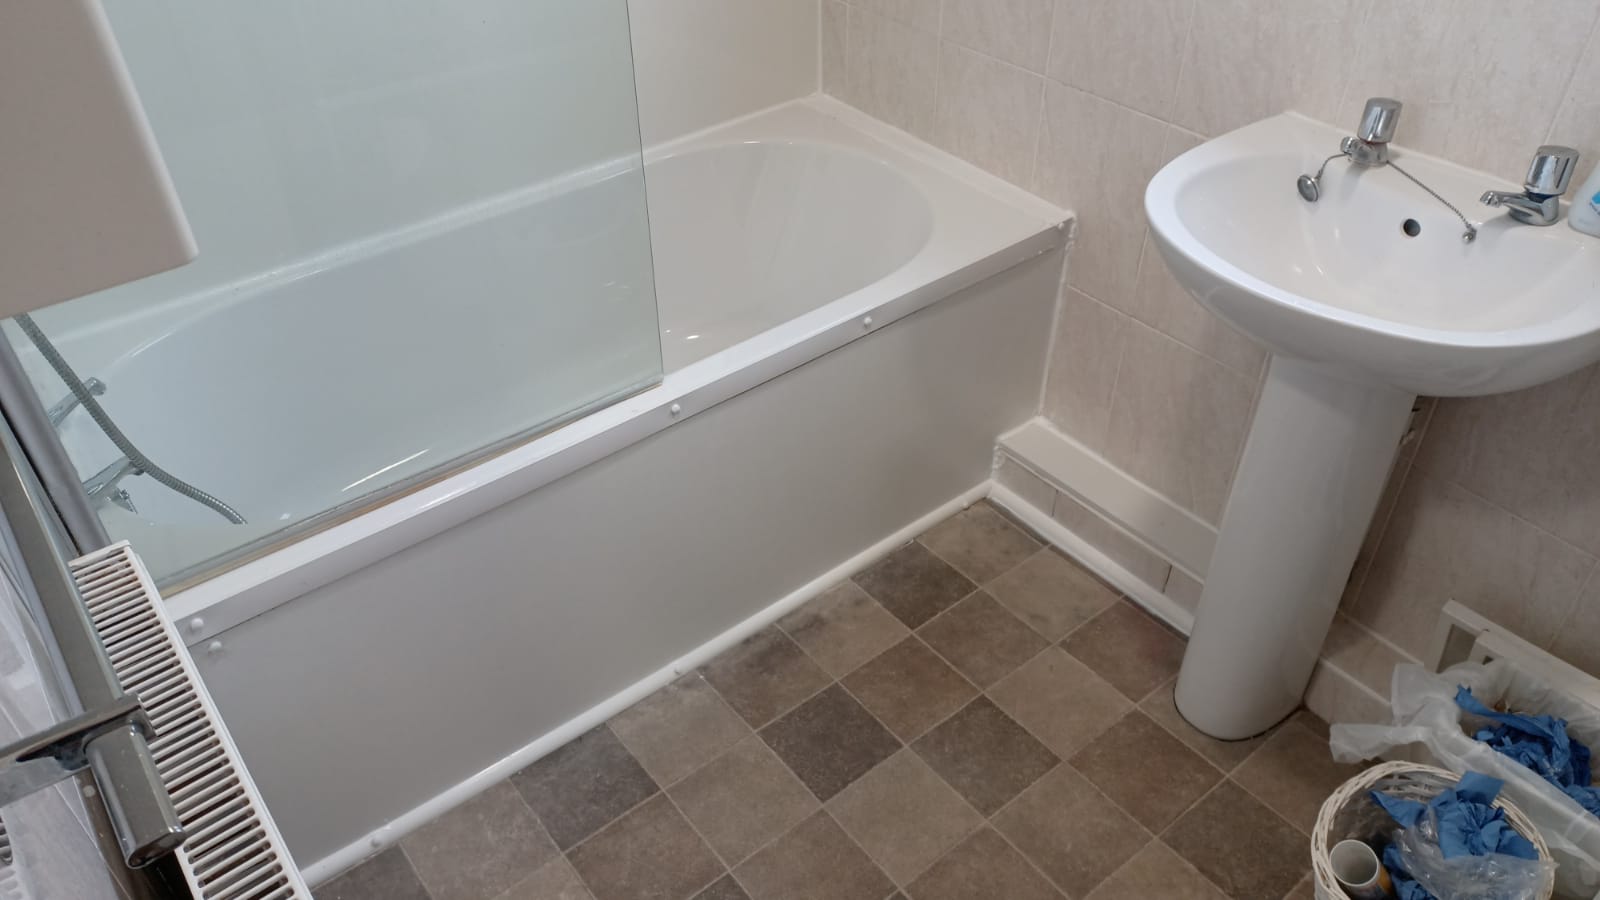 Clarke Property Services Doncaster Bathroom Maintenance Tiling Damp